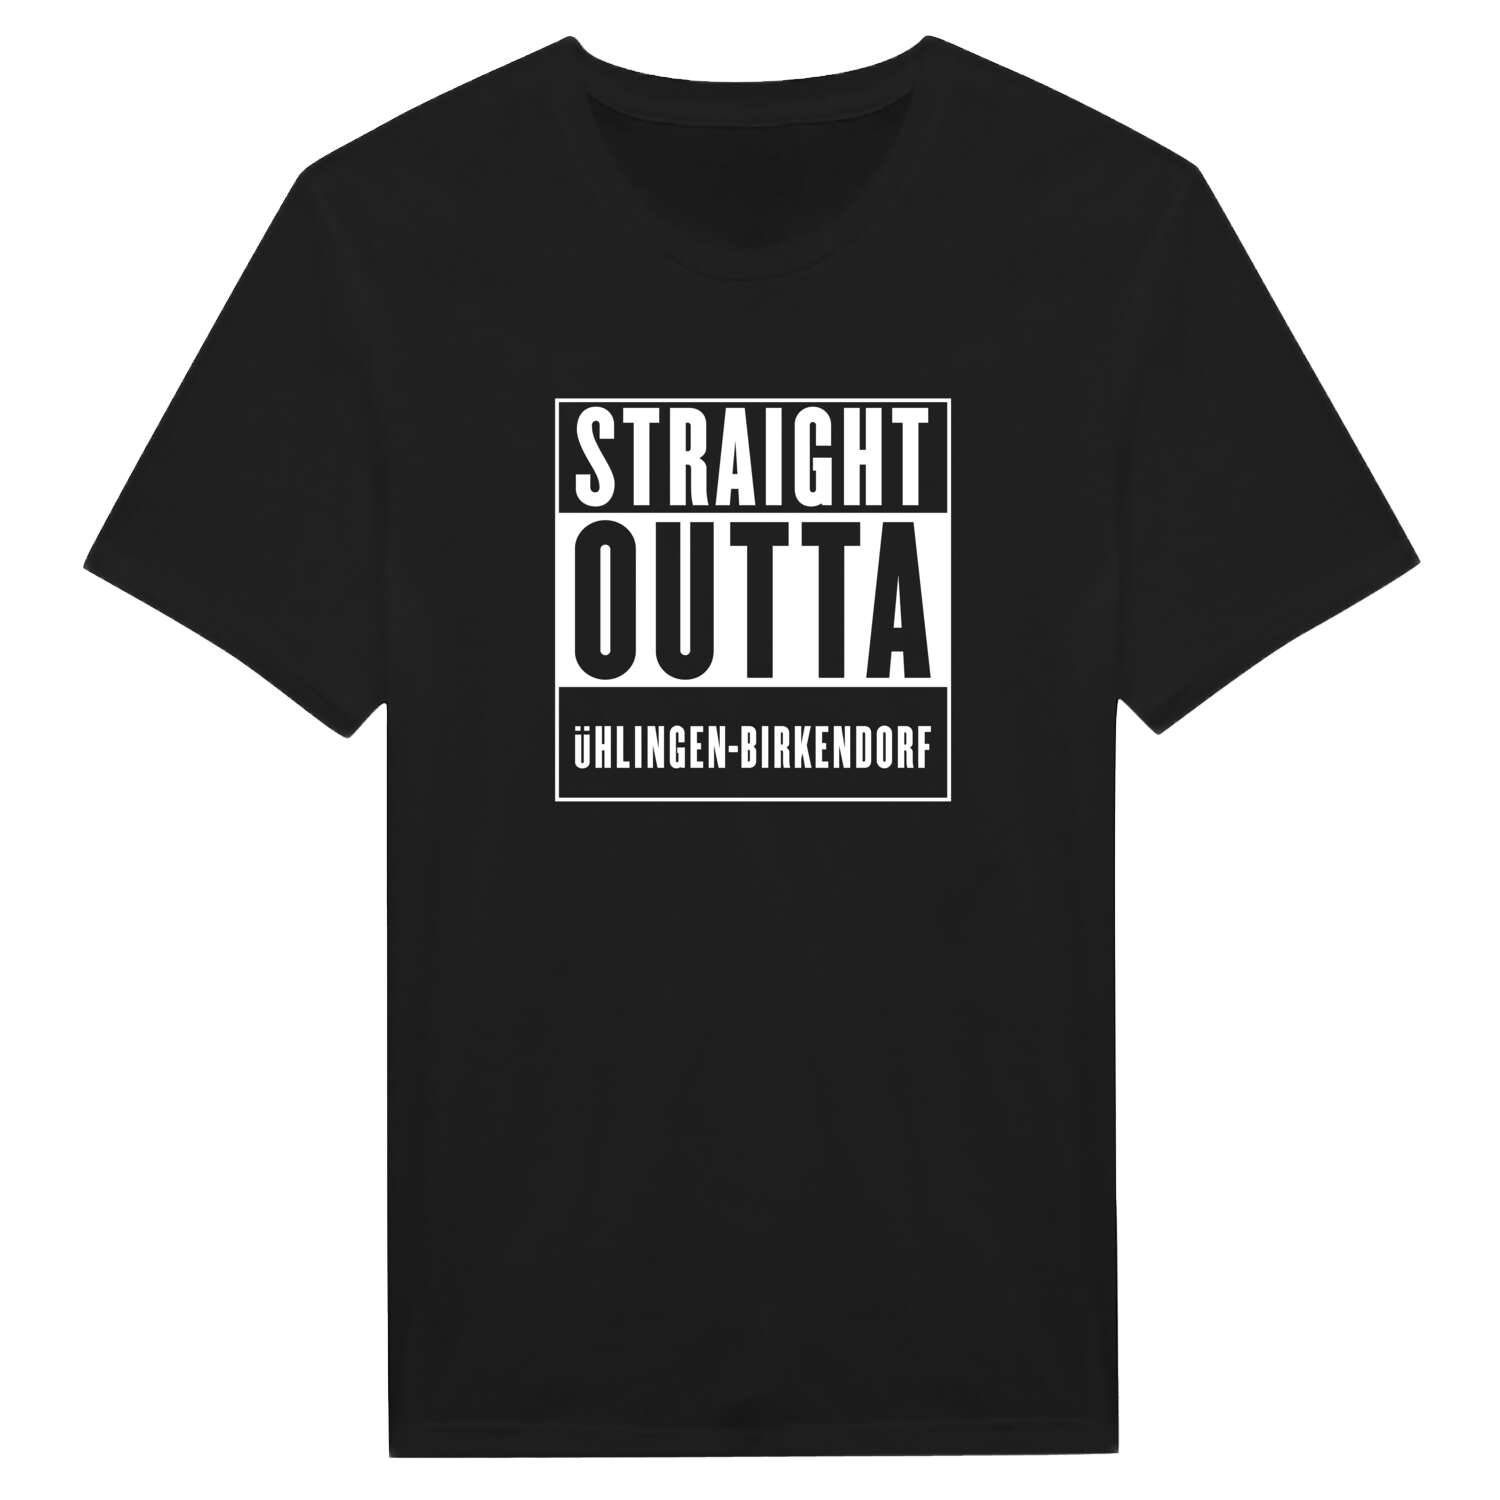 Ühlingen-Birkendorf T-Shirt »Straight Outta«